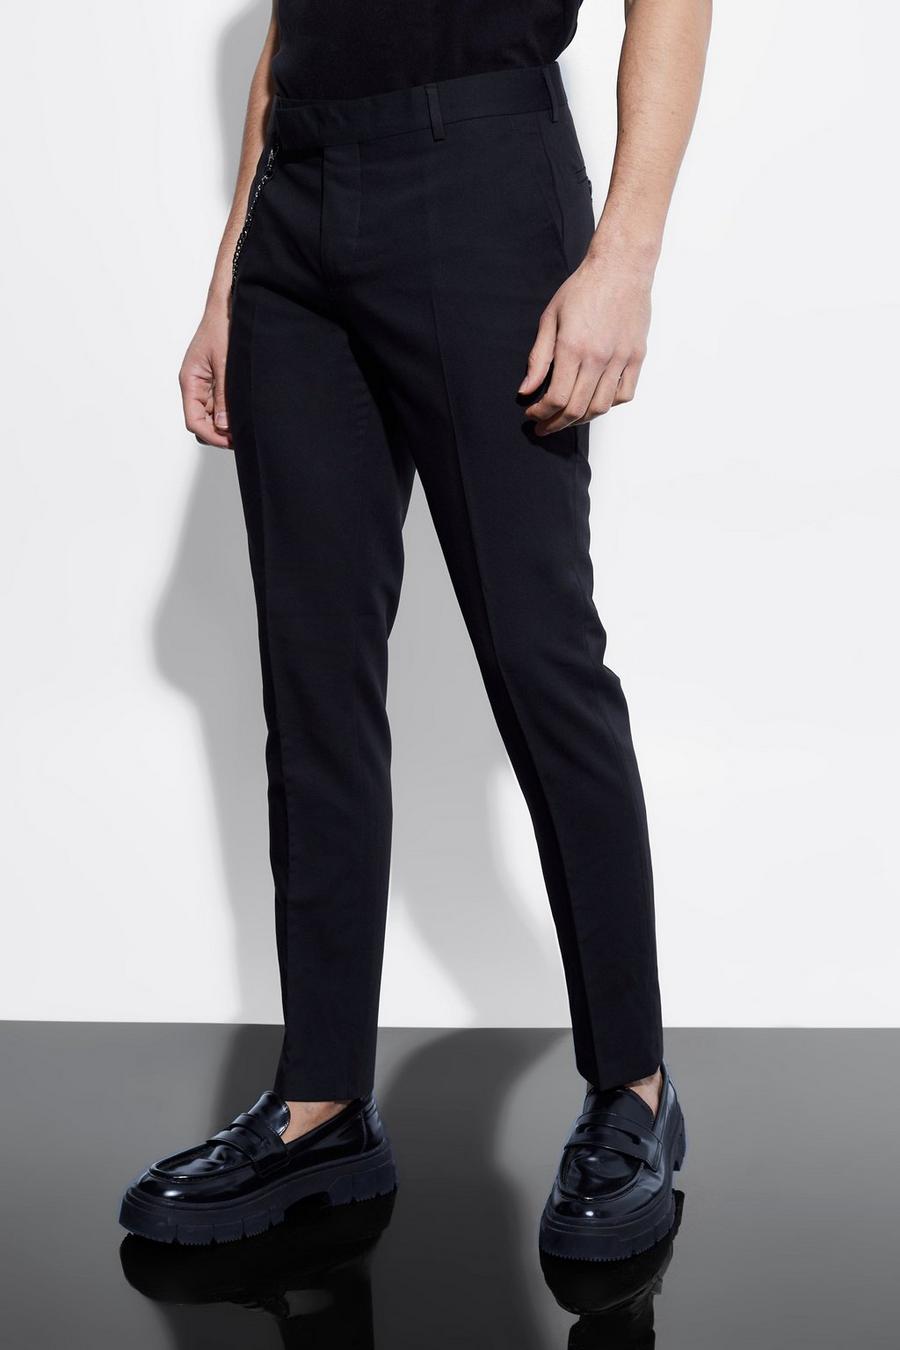 Pantaloni completo Skinny Fit con catena, Black nero